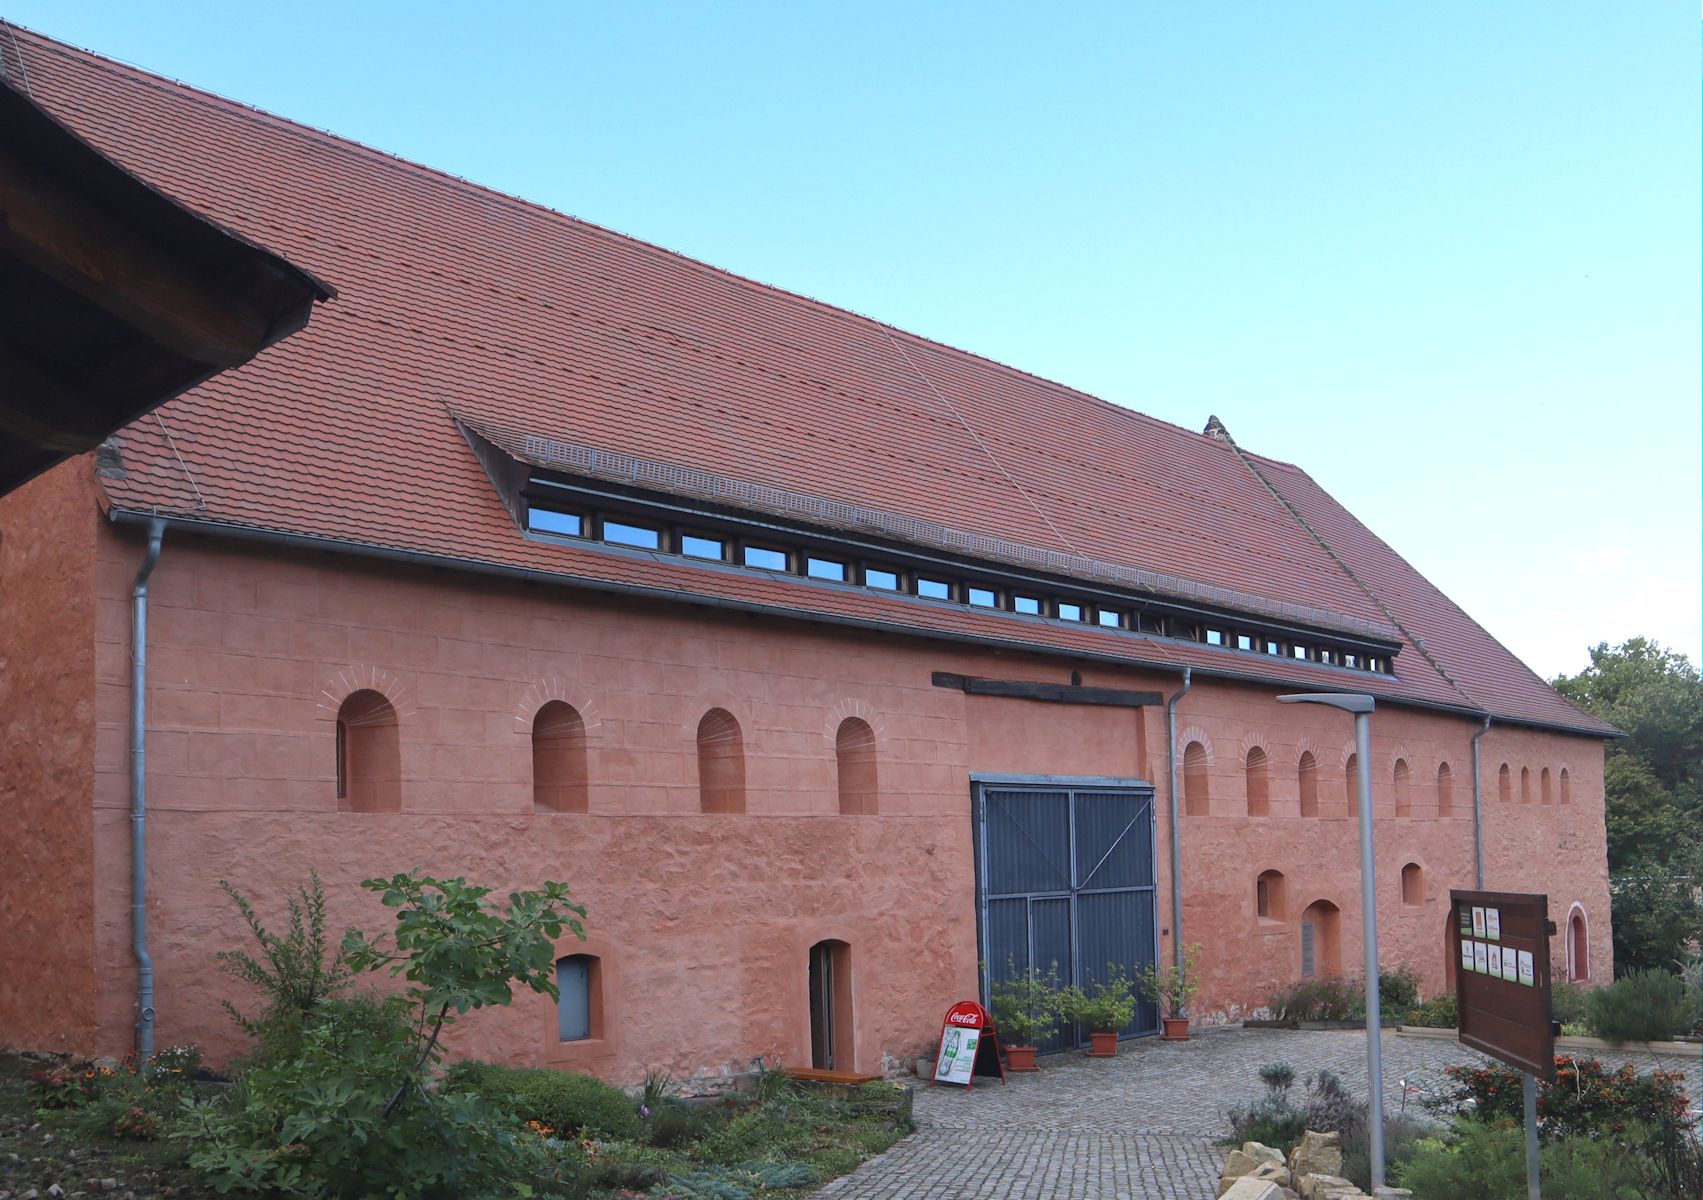 Klosteranlage in Riesa heute